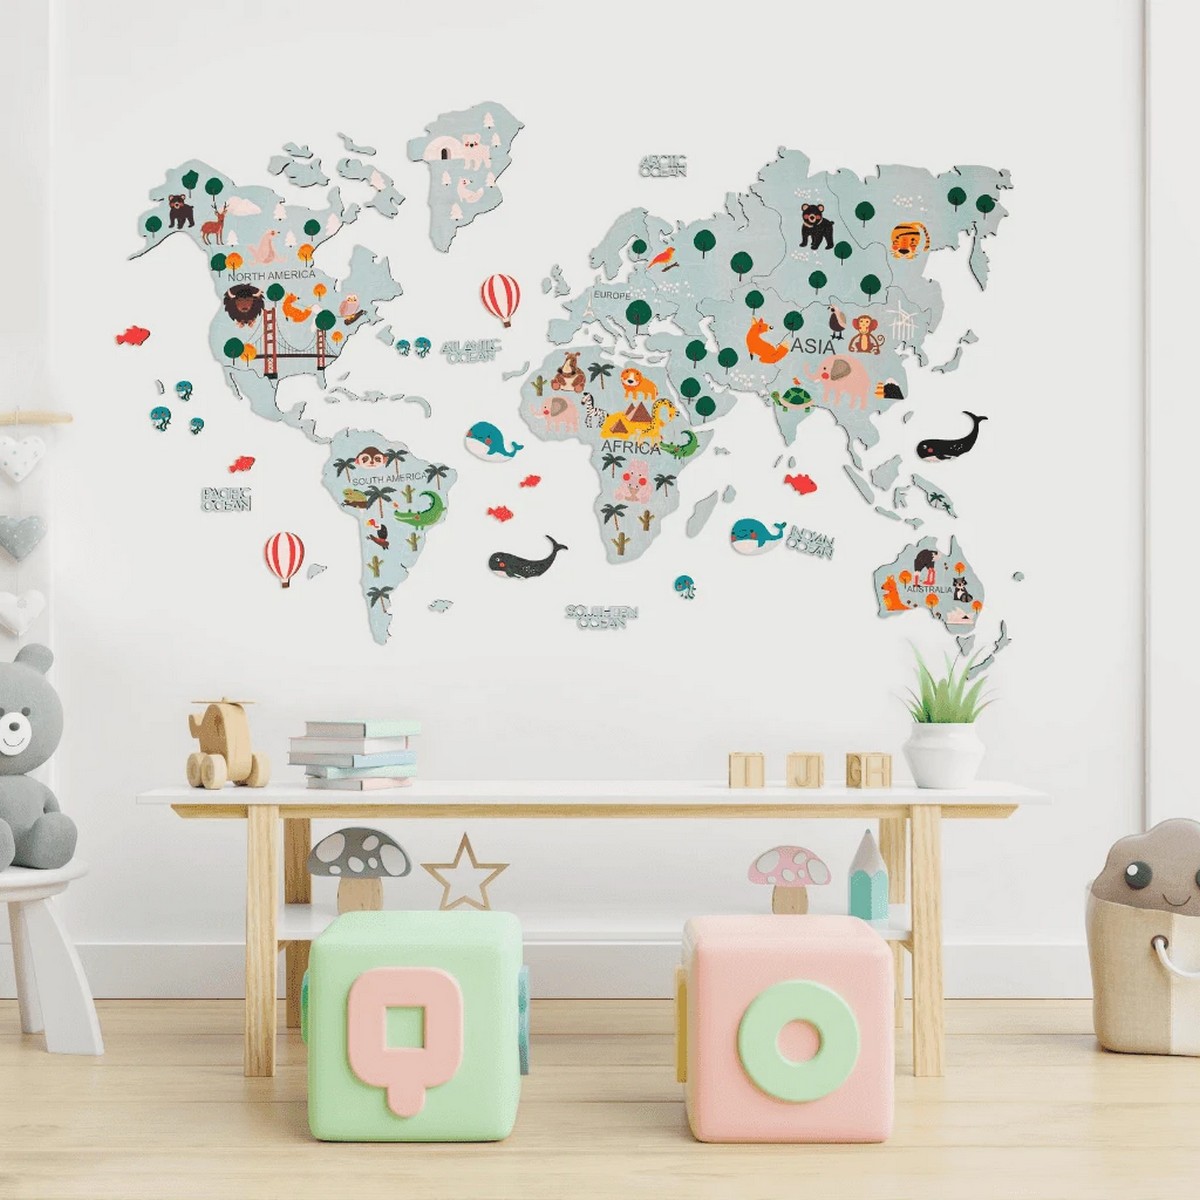 خريطة العالم للأطفال على الحائط